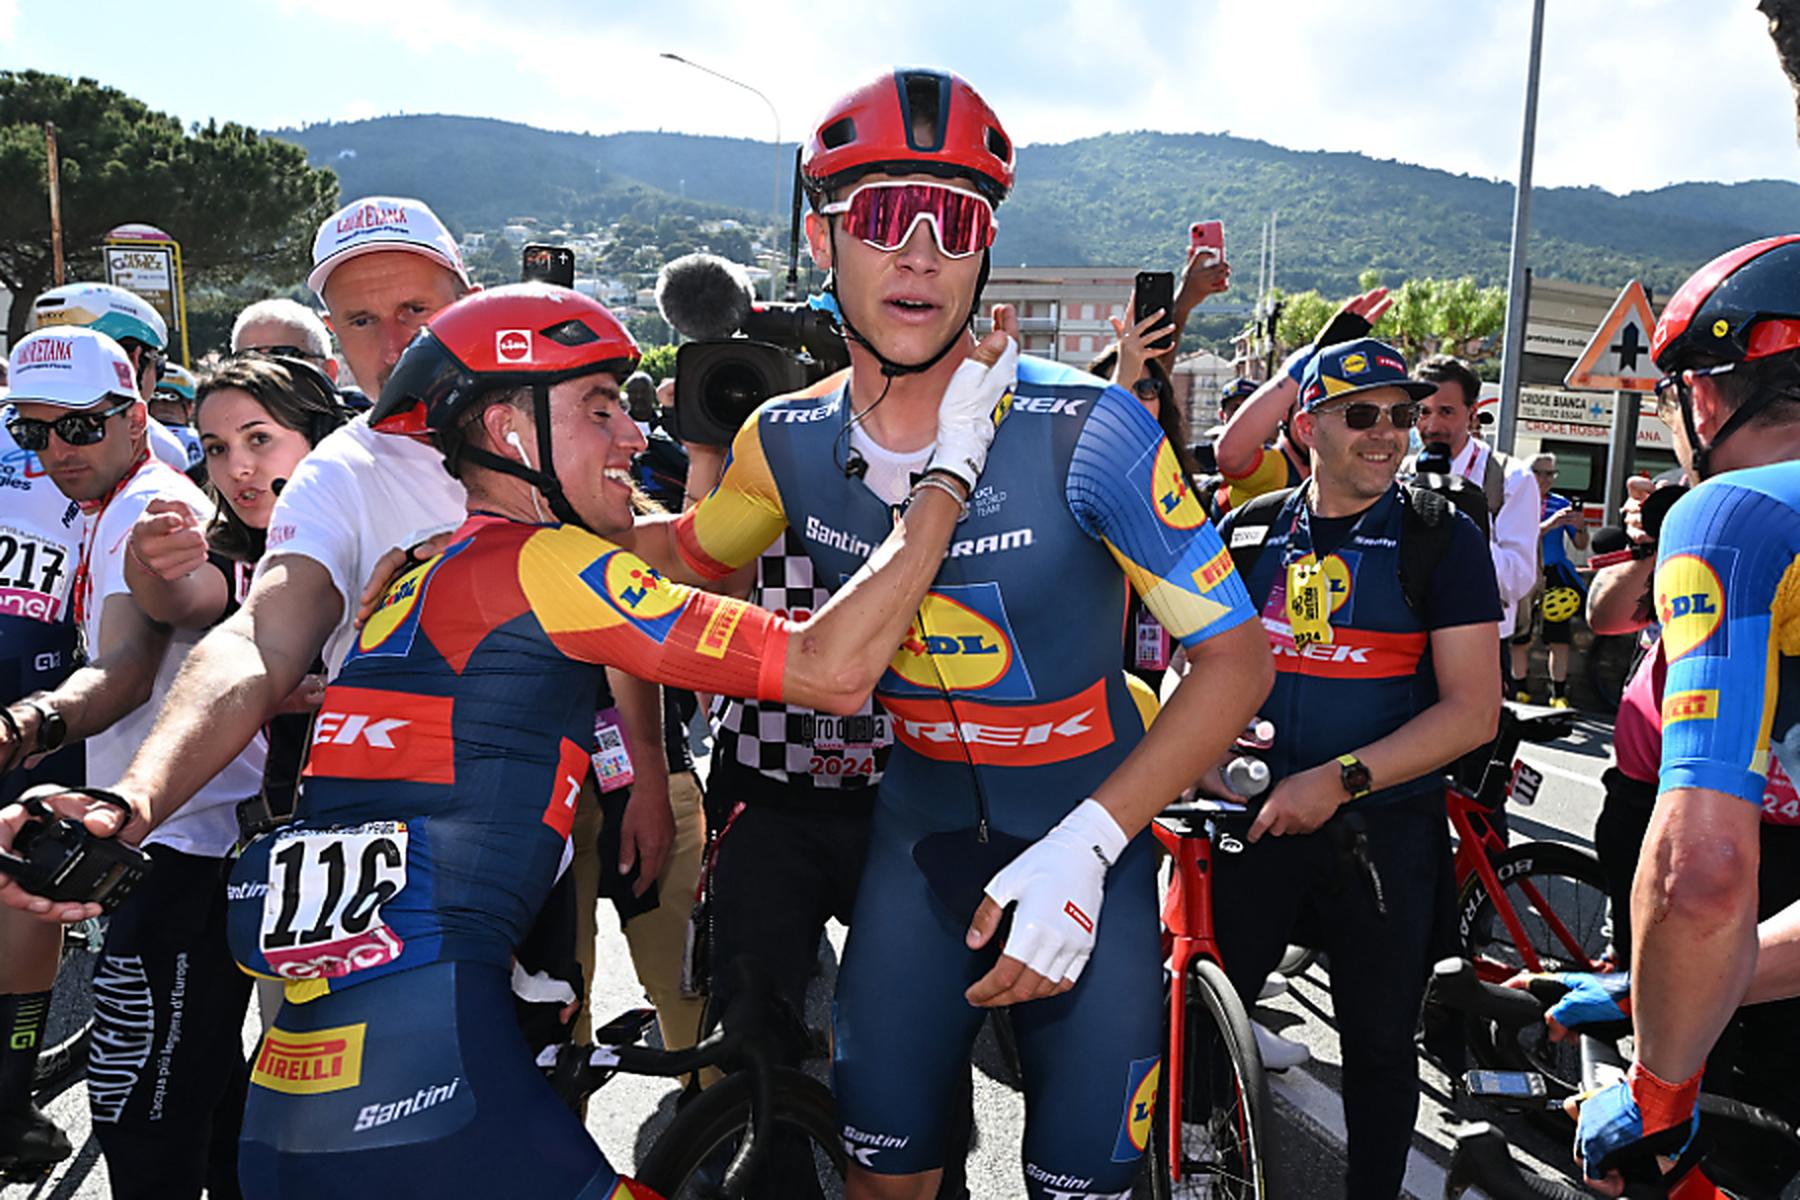 Andora: Italiener Milan sorgt auf 4. Giro-Etappe für Heimsieg